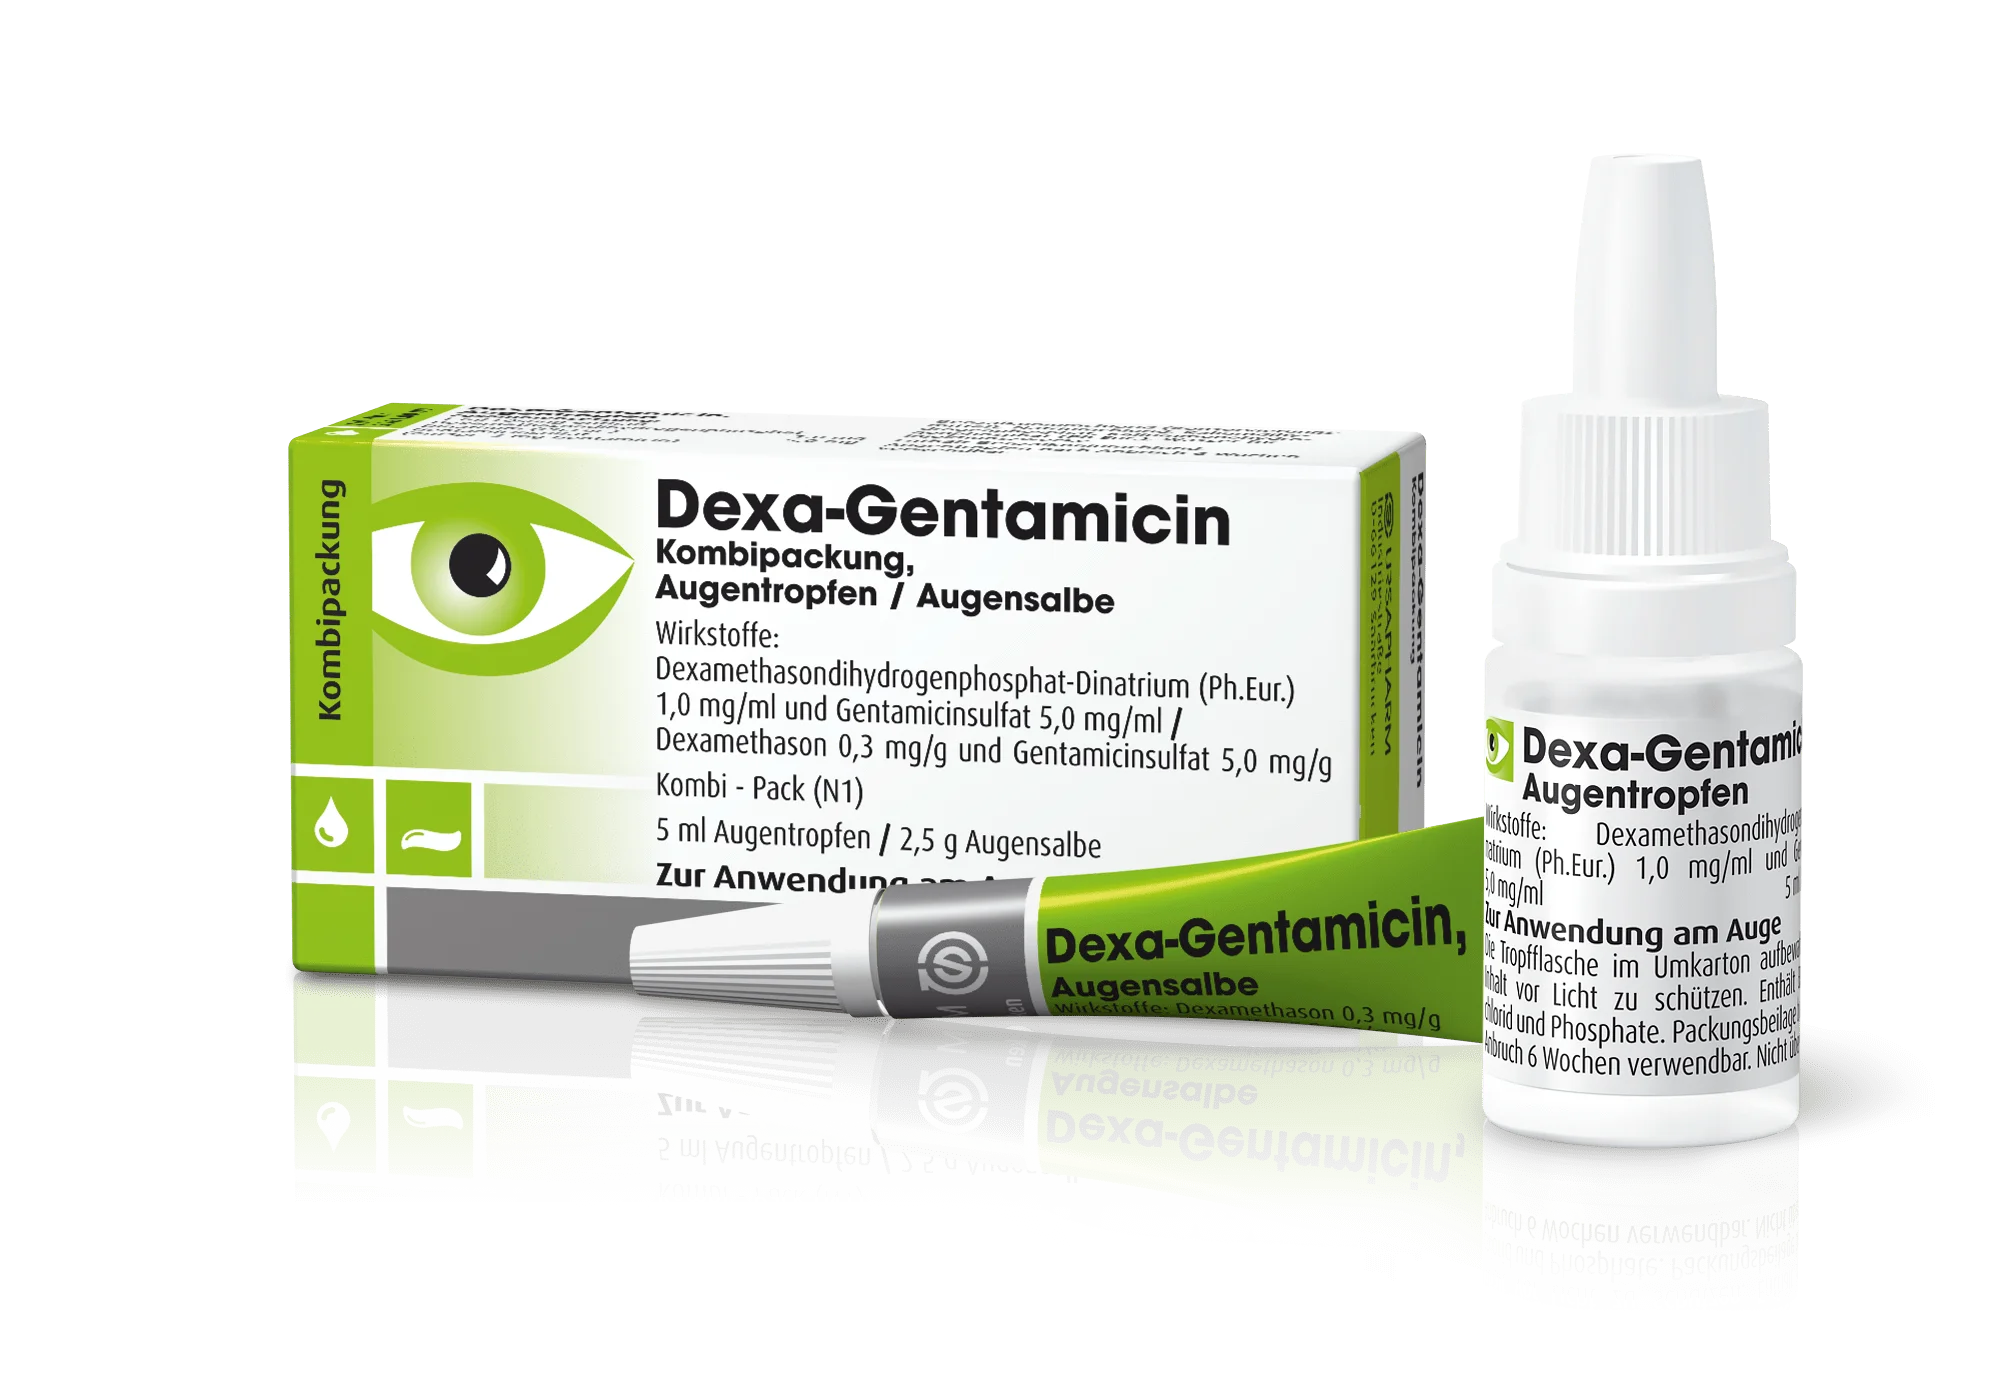 DEXA-GENTAMICIN Kombipack, 5 ml + 2,5 g